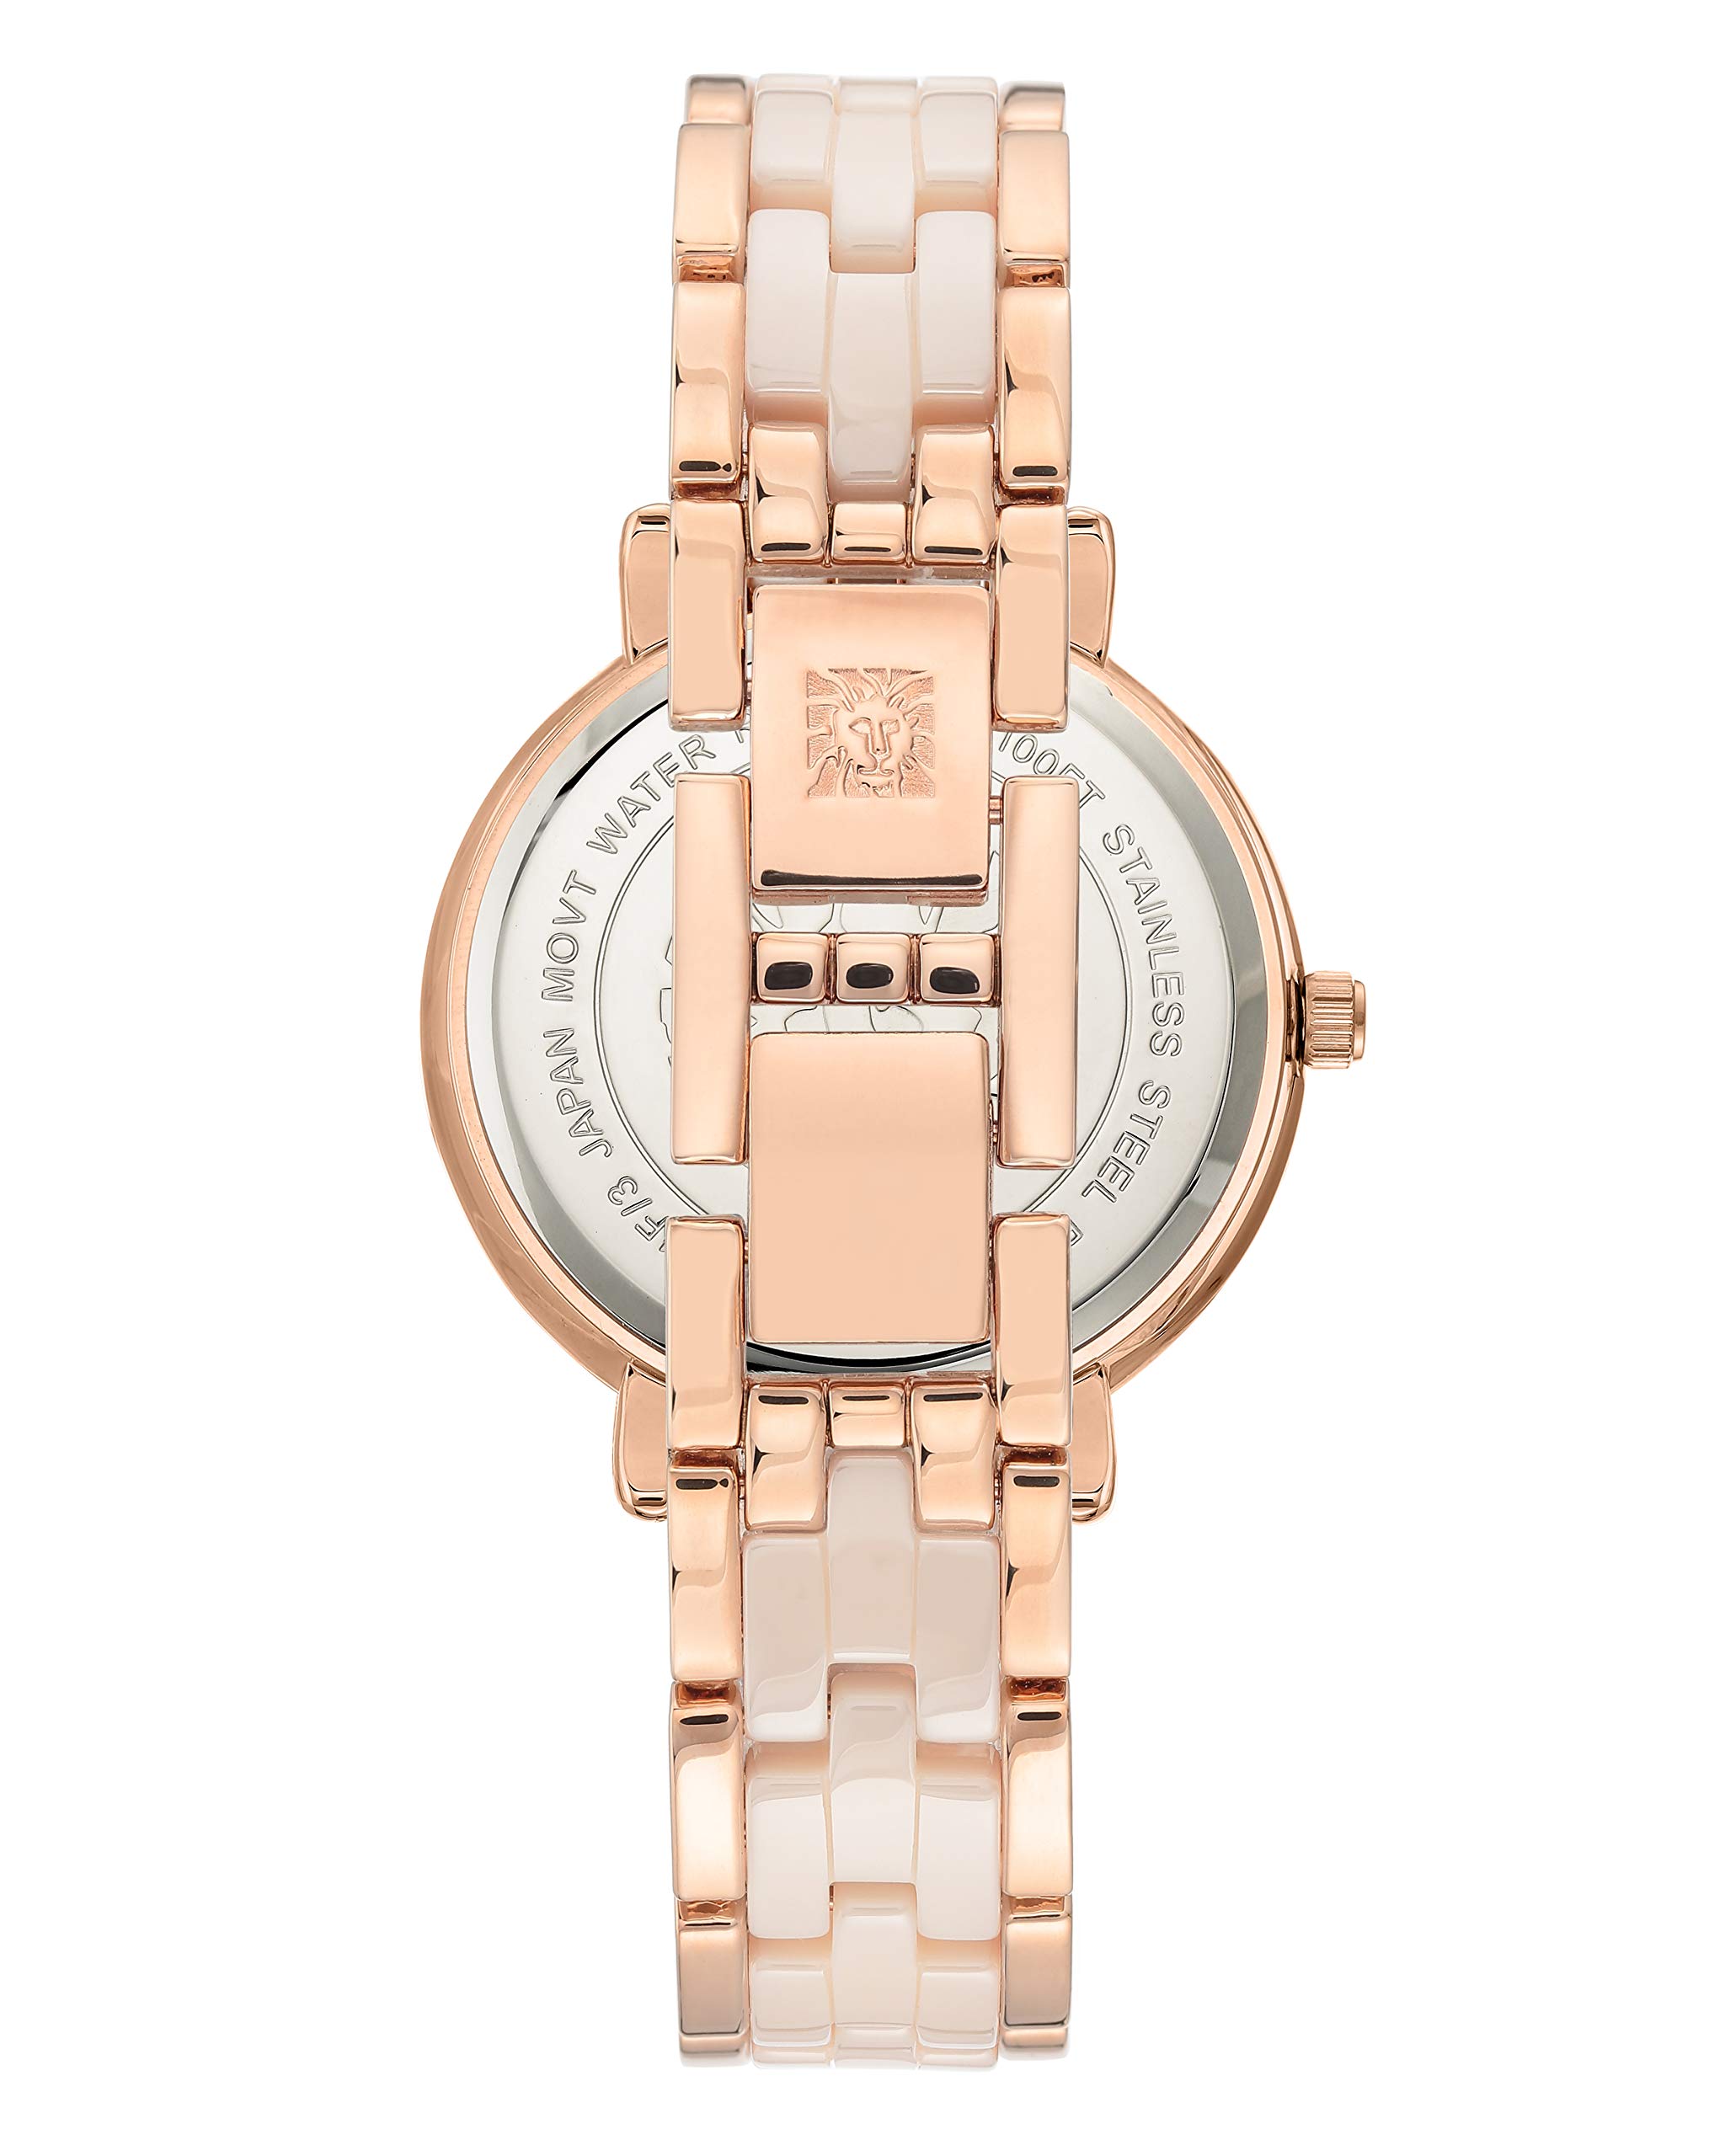 Anne Klein Women's Premium Crystal Accented Ceramic Bracelet Watch, AK/3810